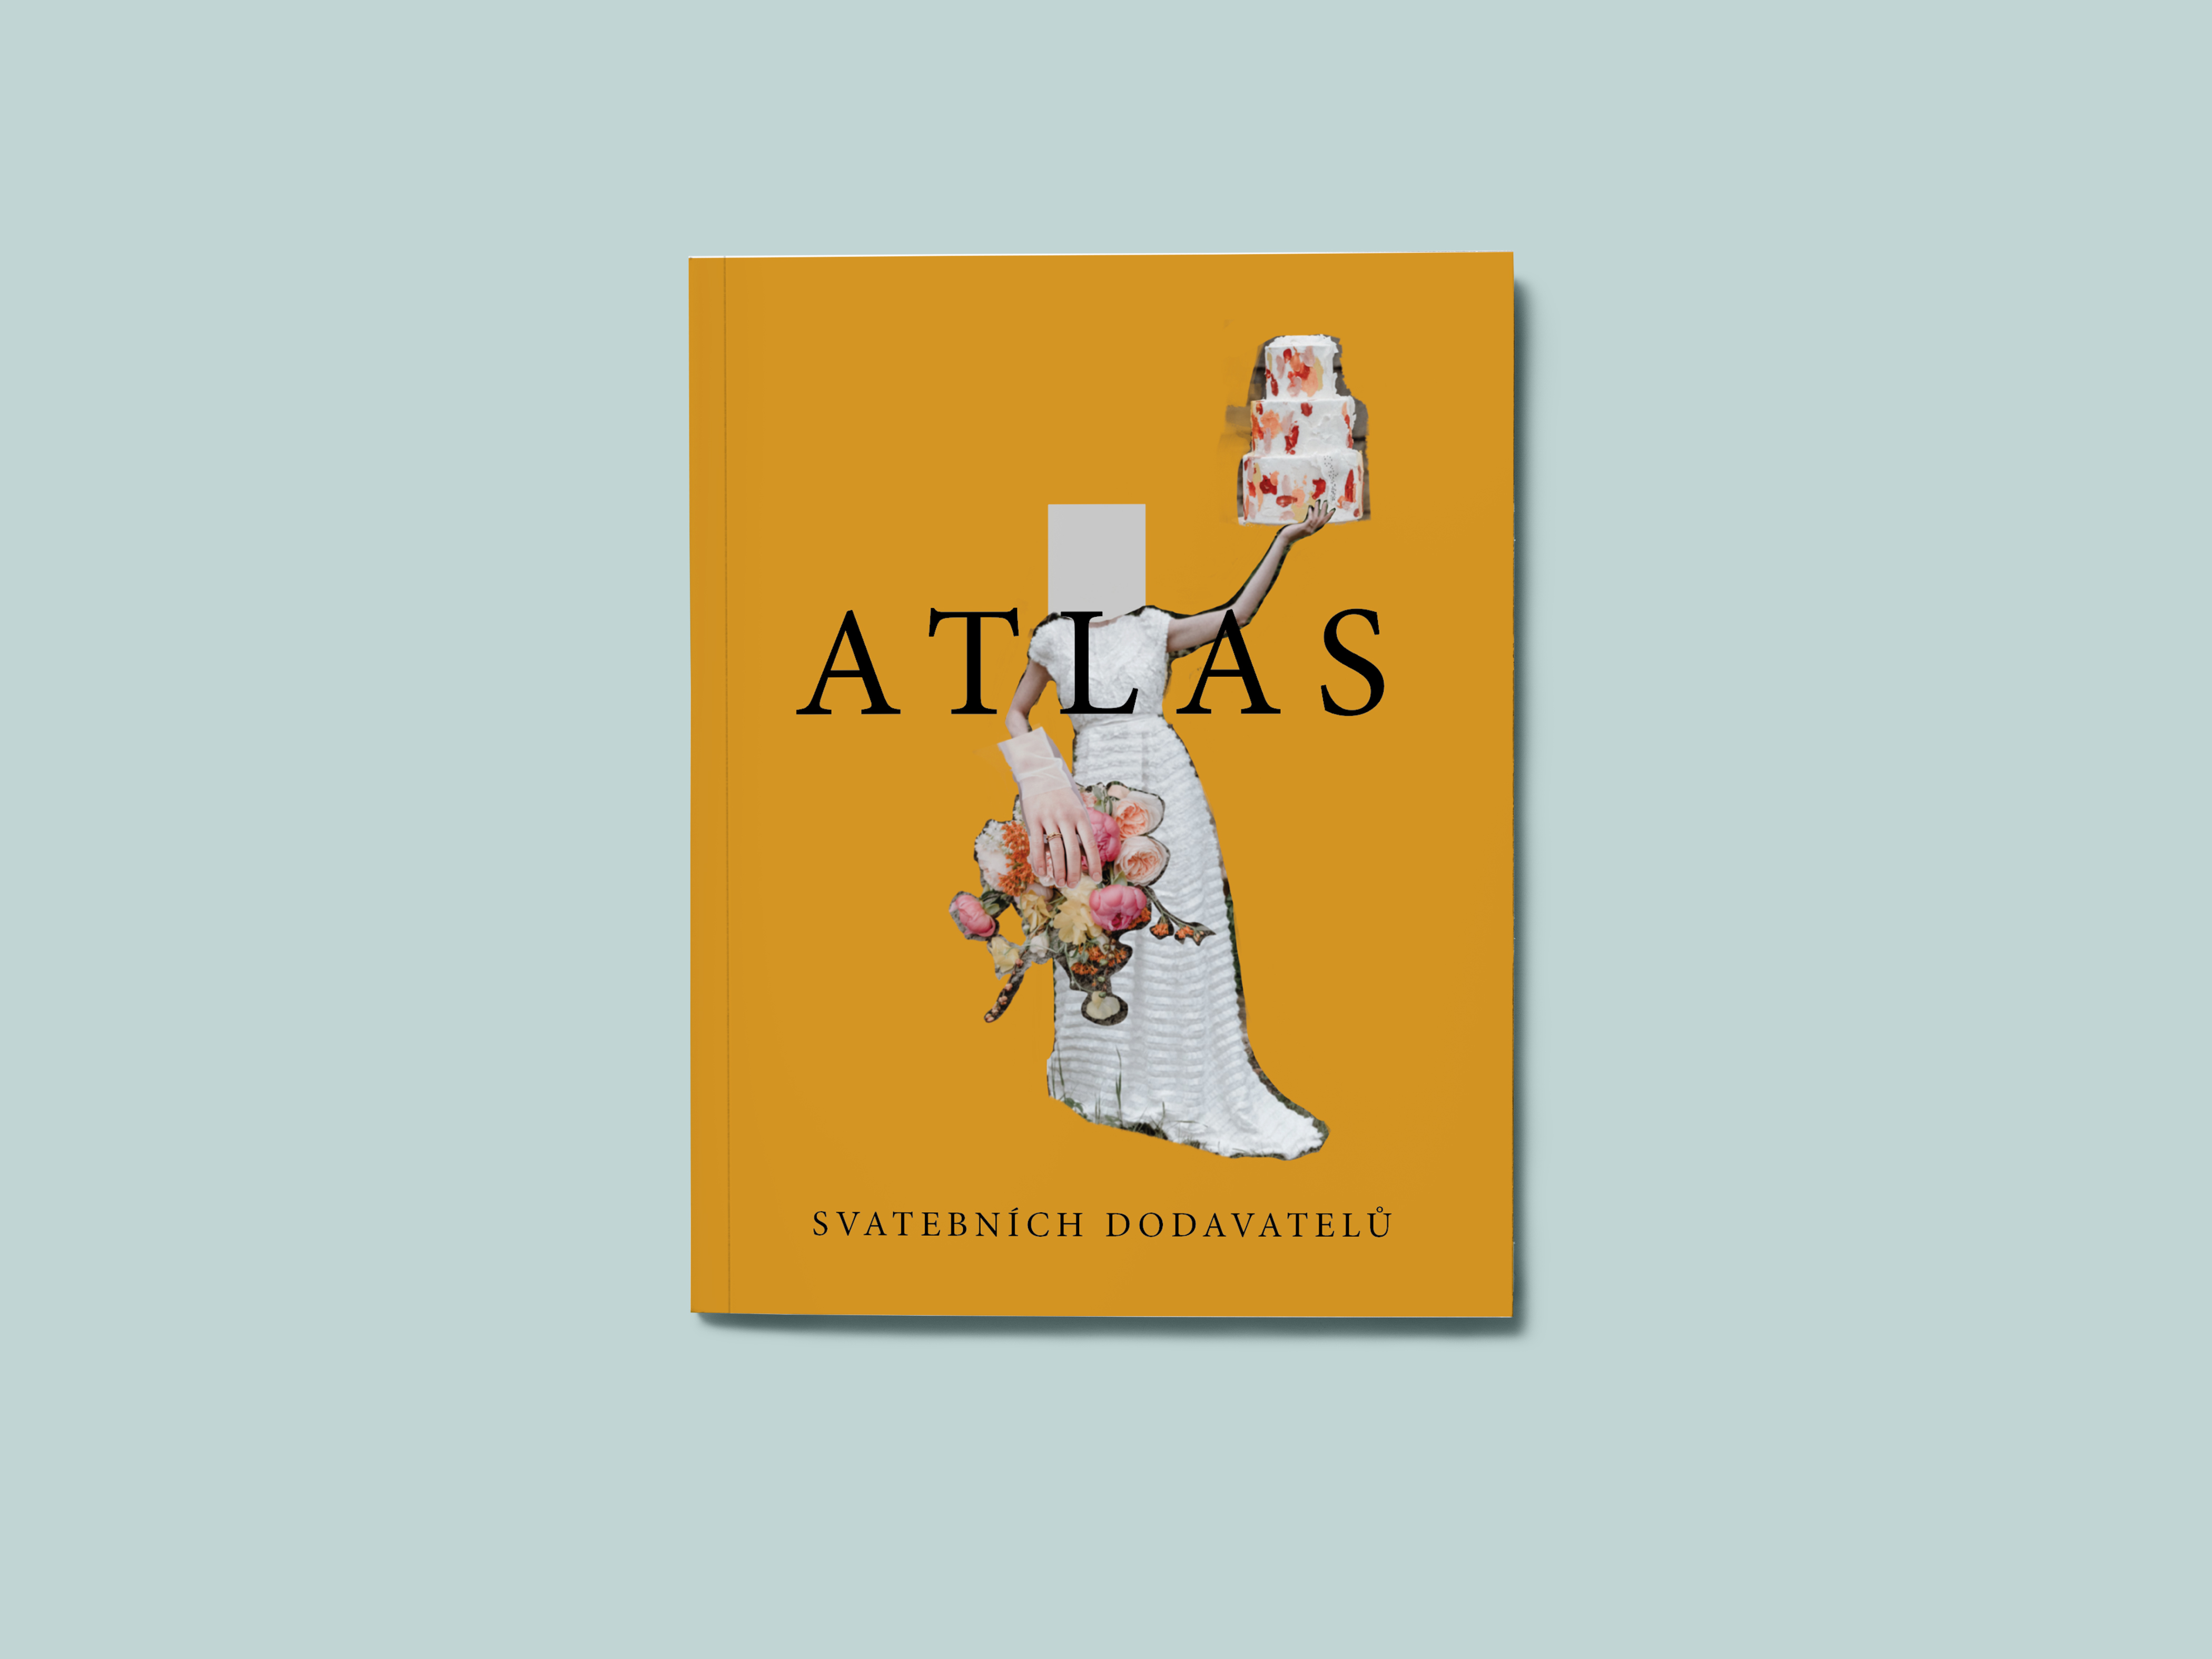 Atlas svatebních dodavatelů by MILE